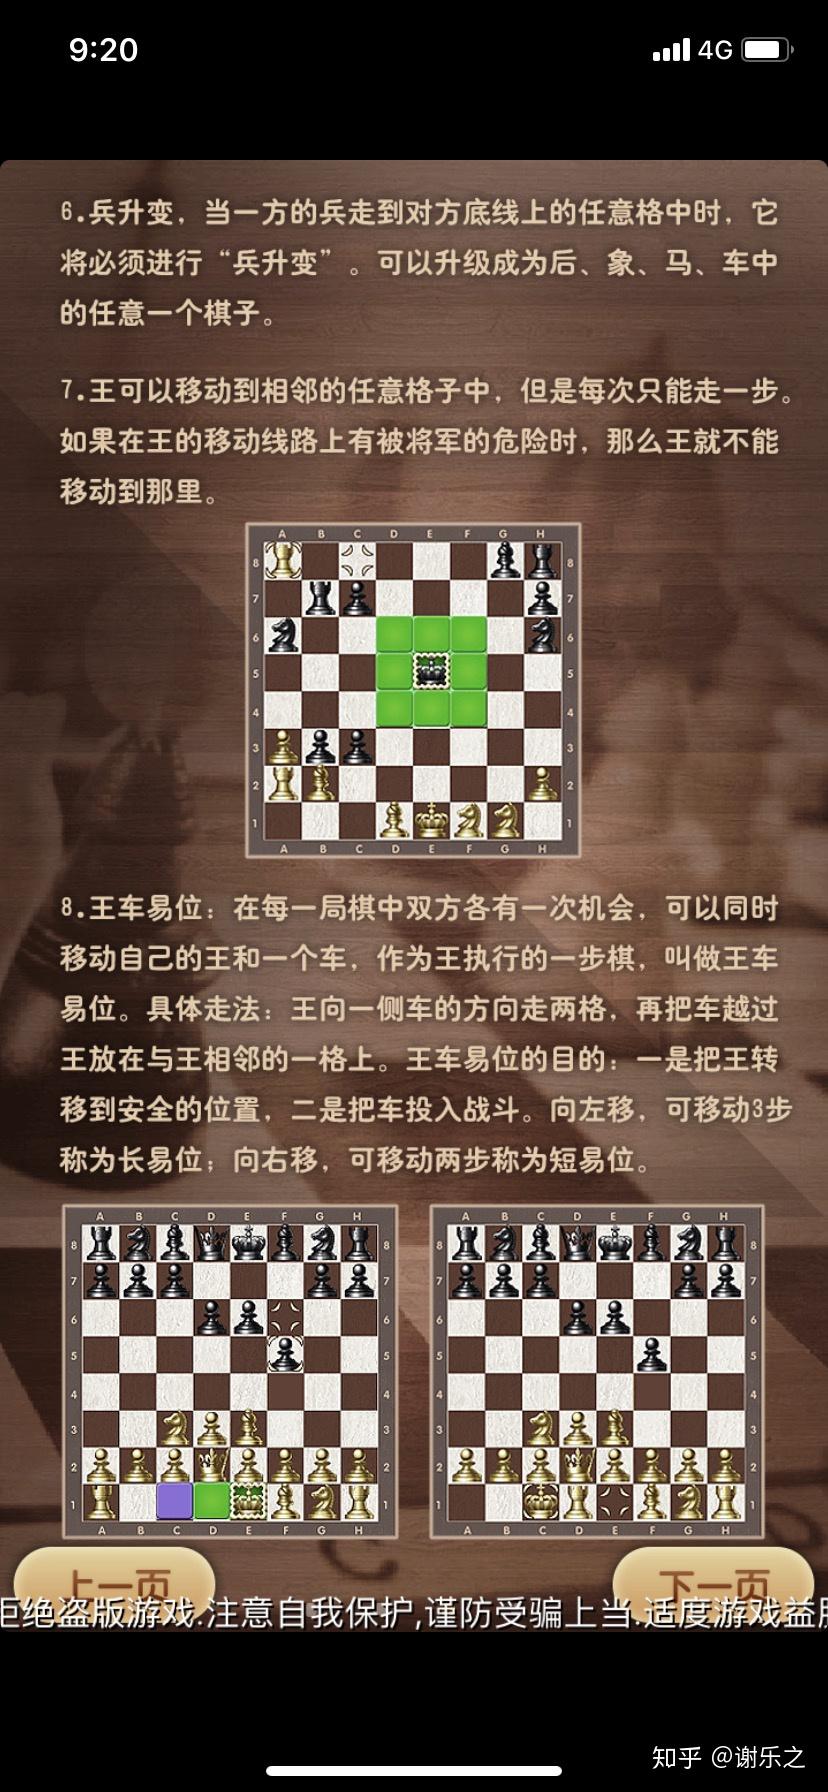 国际象棋名称图解图片